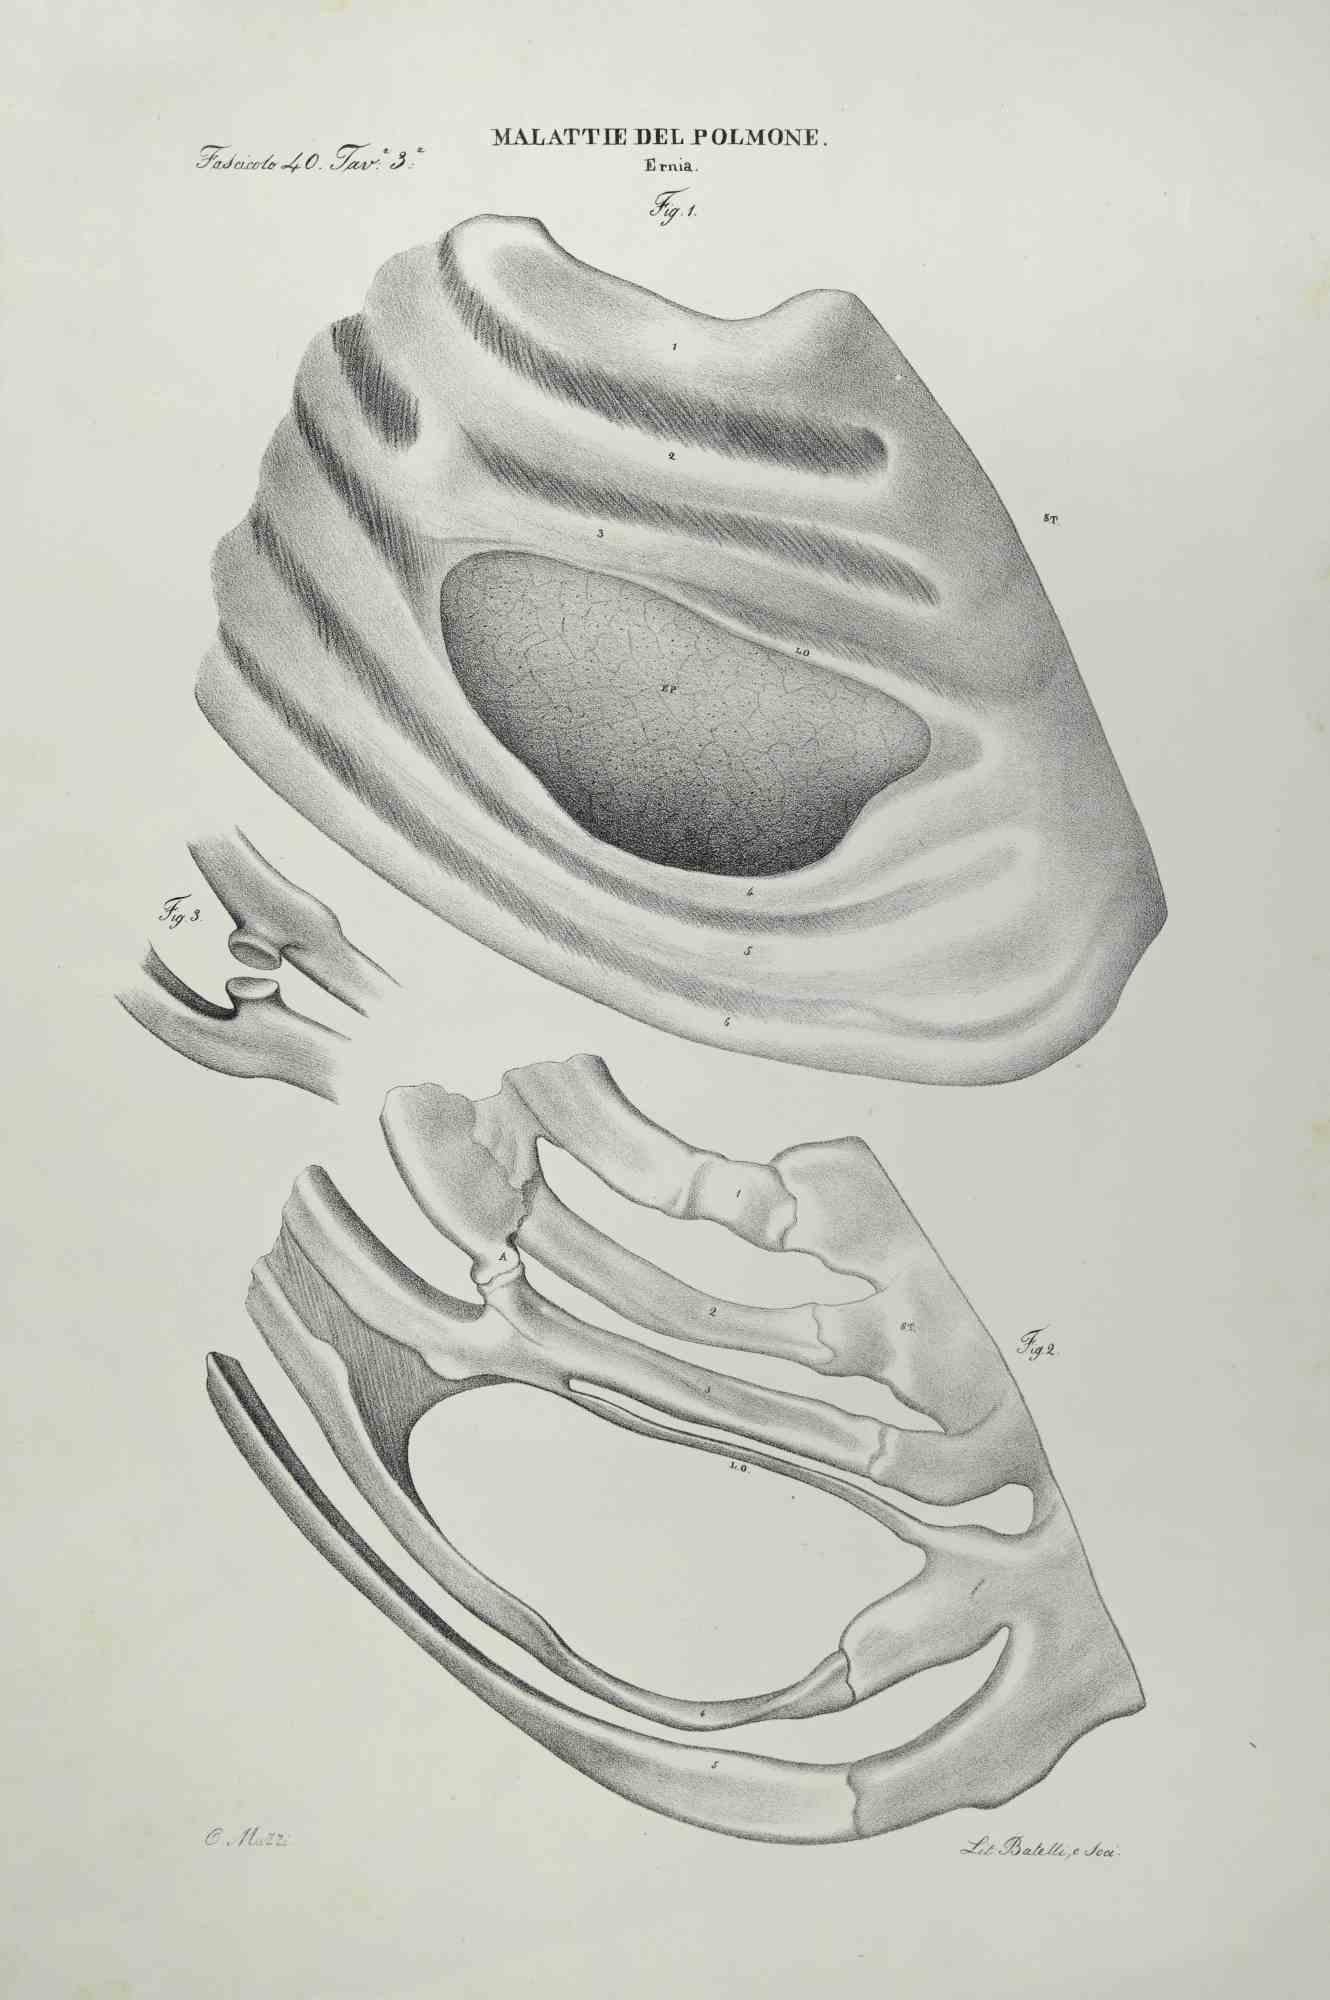 Maladies pulmonaires est une lithographie coloriée à la main par Ottavio Muzzi pour l'édition d'Antoine Chazal, Anatomie humaine, Imprimeurs Batelli et Ridolfi, réalisée en 1843.

Signé sur la plaque dans la marge inférieure gauche.